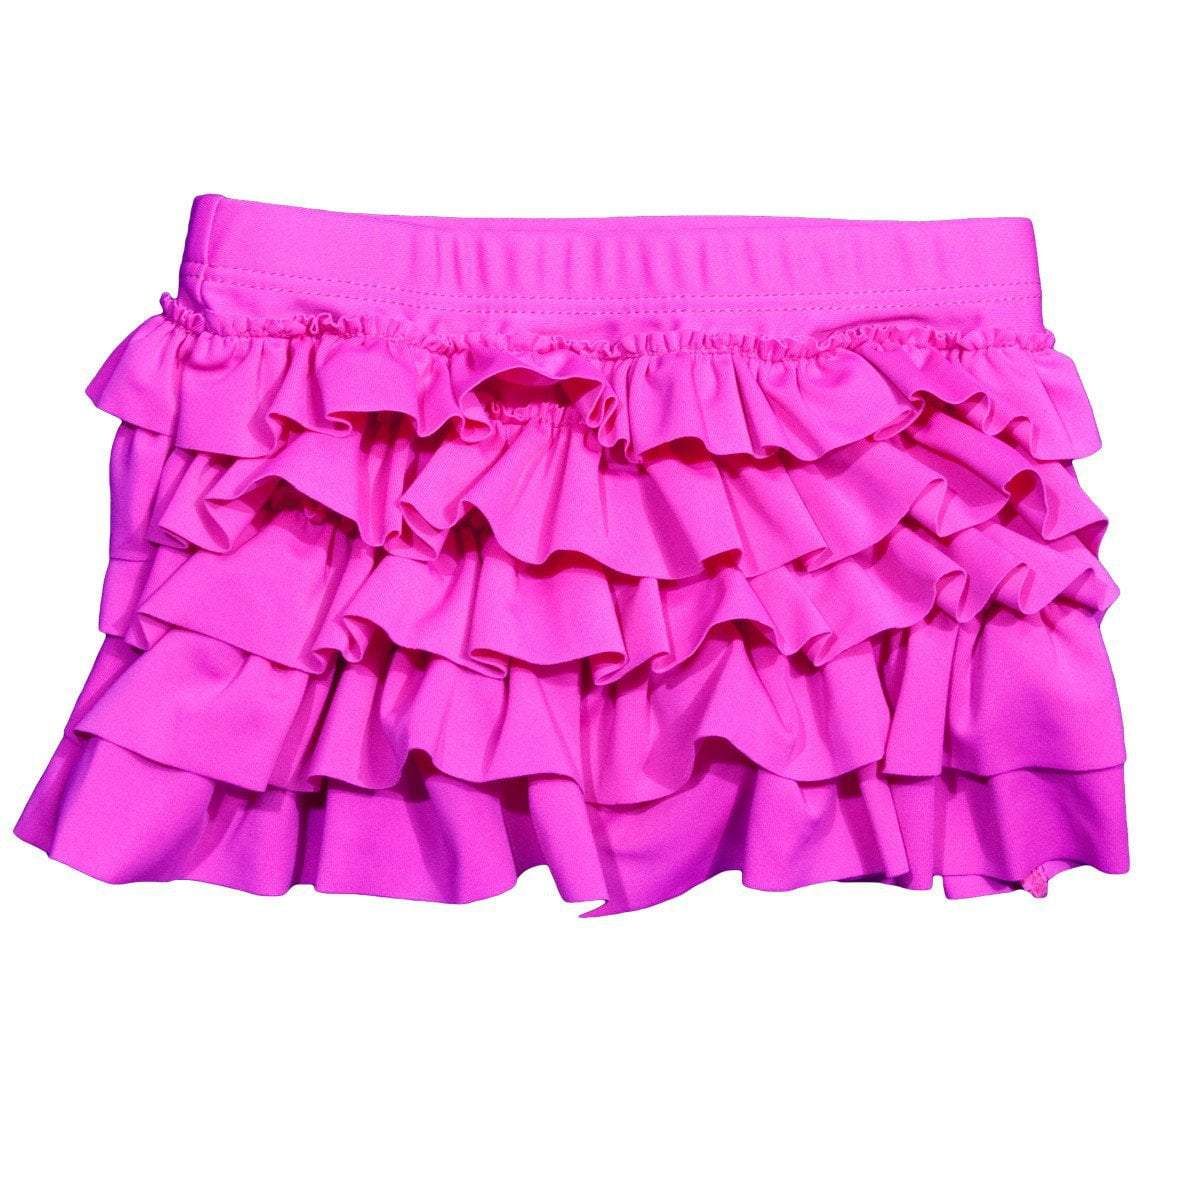 BANZ Swimsuit Girls 2-6 Swim Skirts 2 / Pink Ruffle